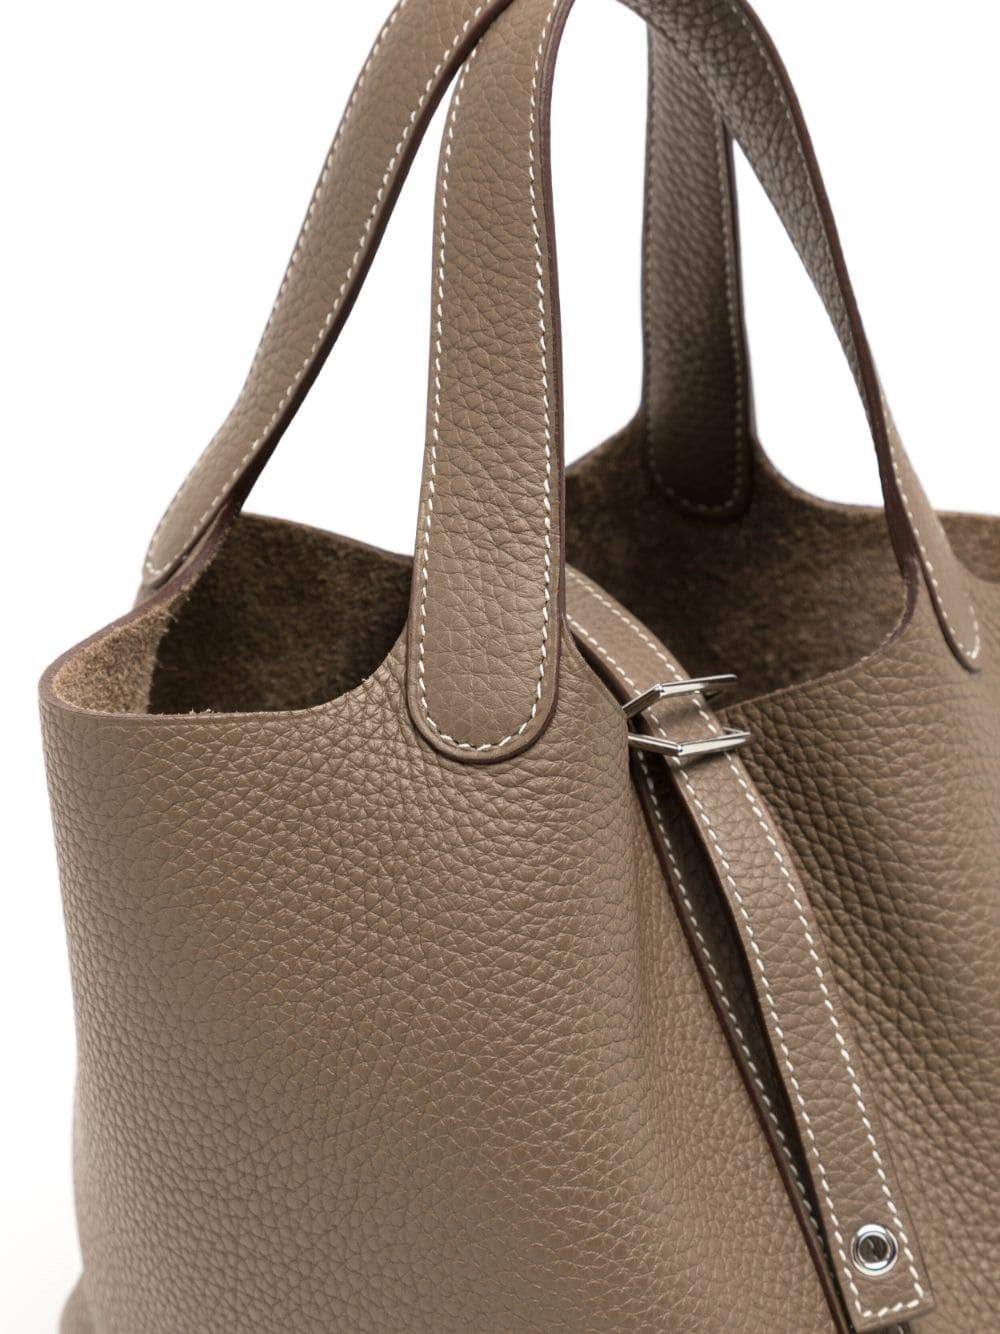 L'élégance intemporelle du sac Picotin 22 Eleg est inégalée. Doté de ferrures en palladium très tendance et d'une couleur étoupe populaire, ce sac de style minimaliste est fabriqué à partir de cuir non doublé et possède des poignées flexibles qui le